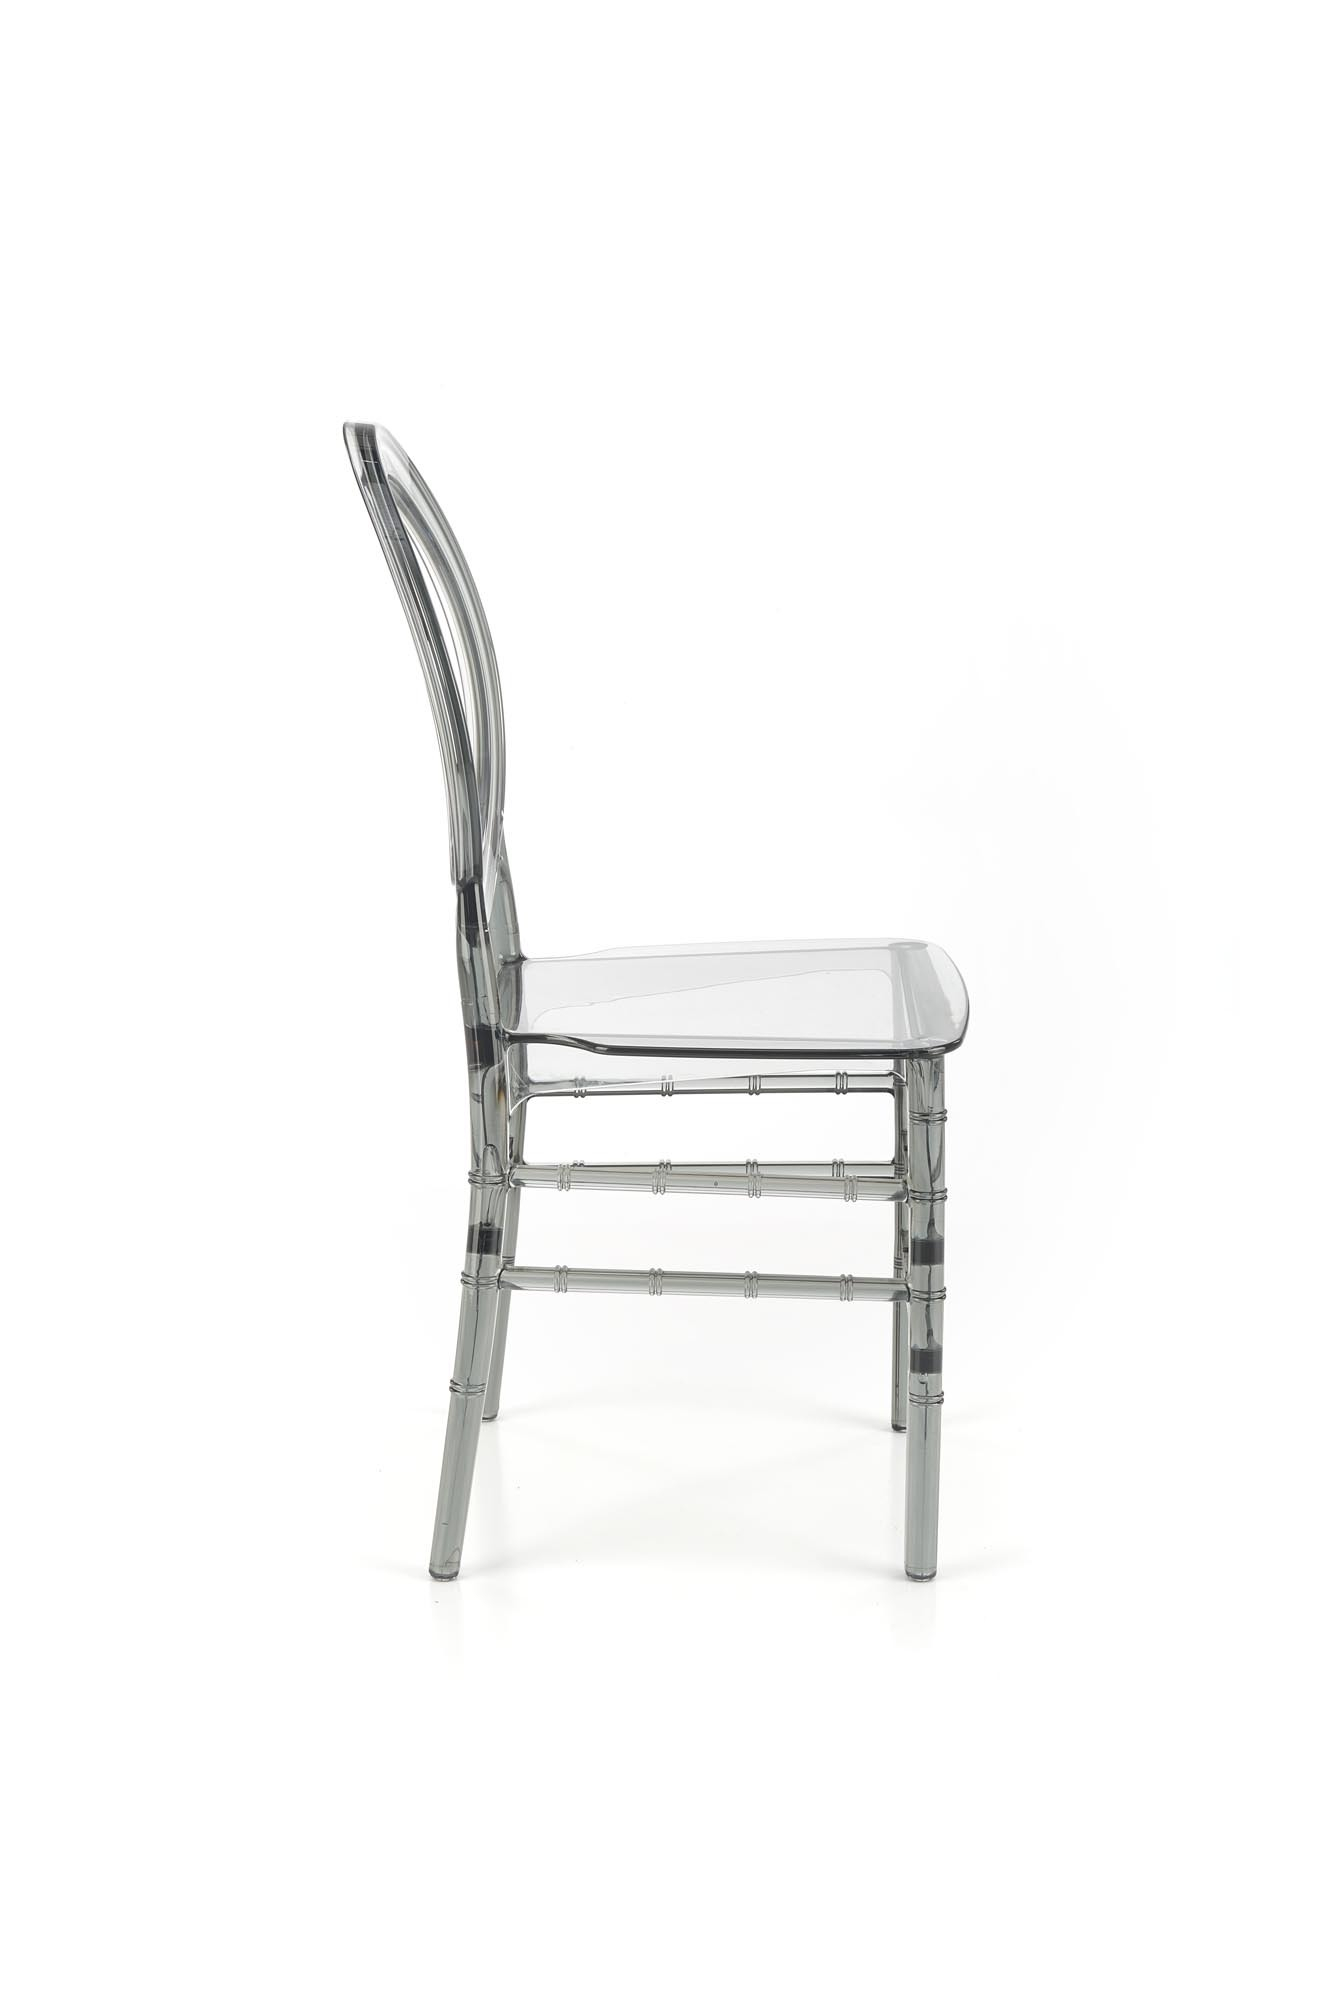 K513 krzesło poliwęglan, dymiony